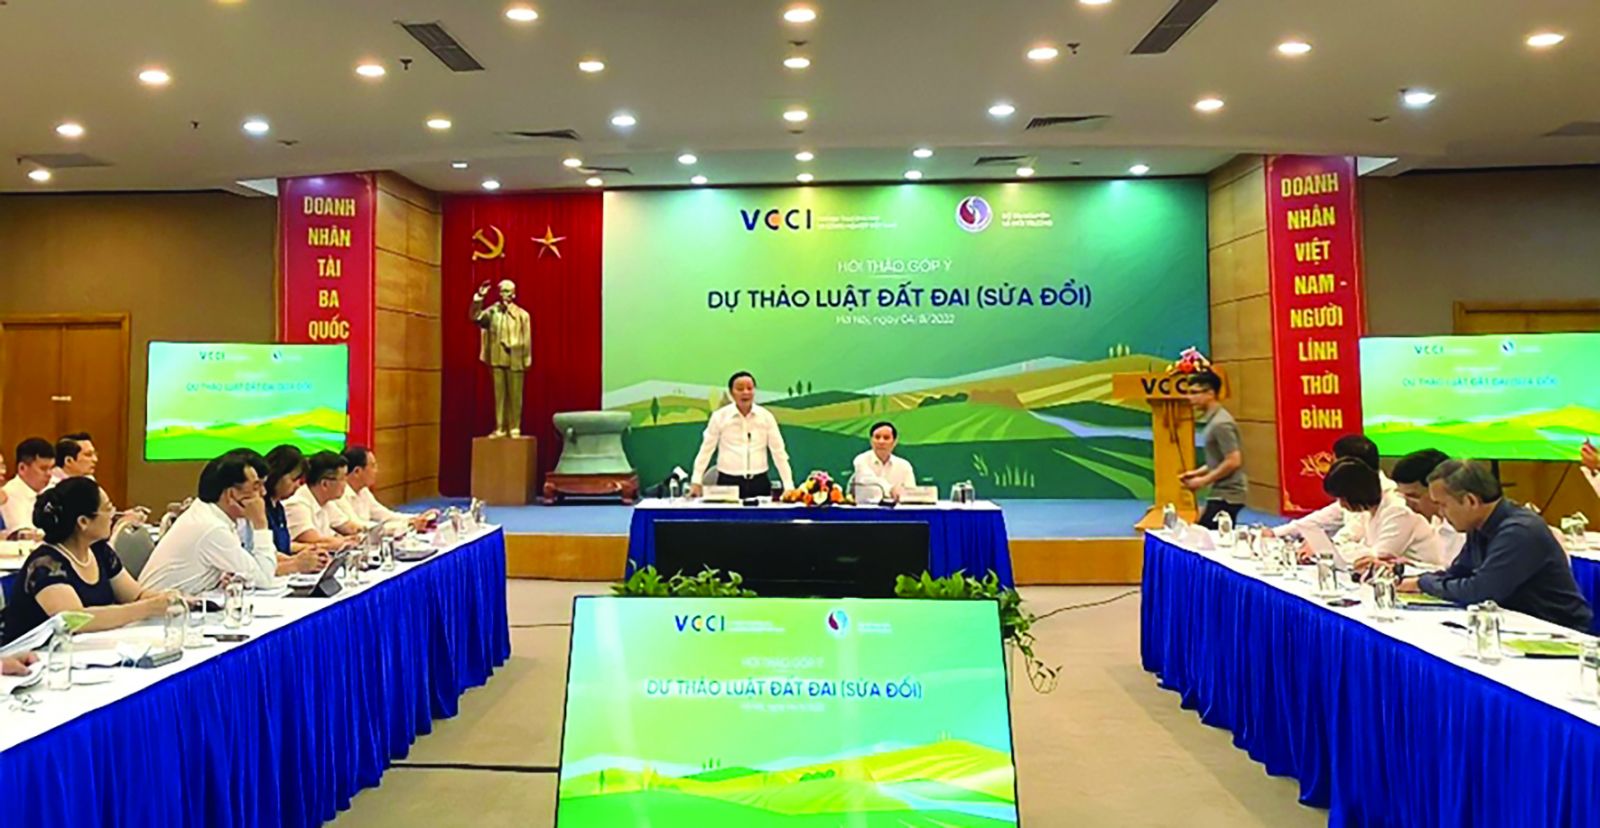  Hội thảo góp ý Dự thảo Luật Đất đai (sửa đổi) do VCCI phối hợp với Bộ Tài nguyên và Môi trường tổ chức.